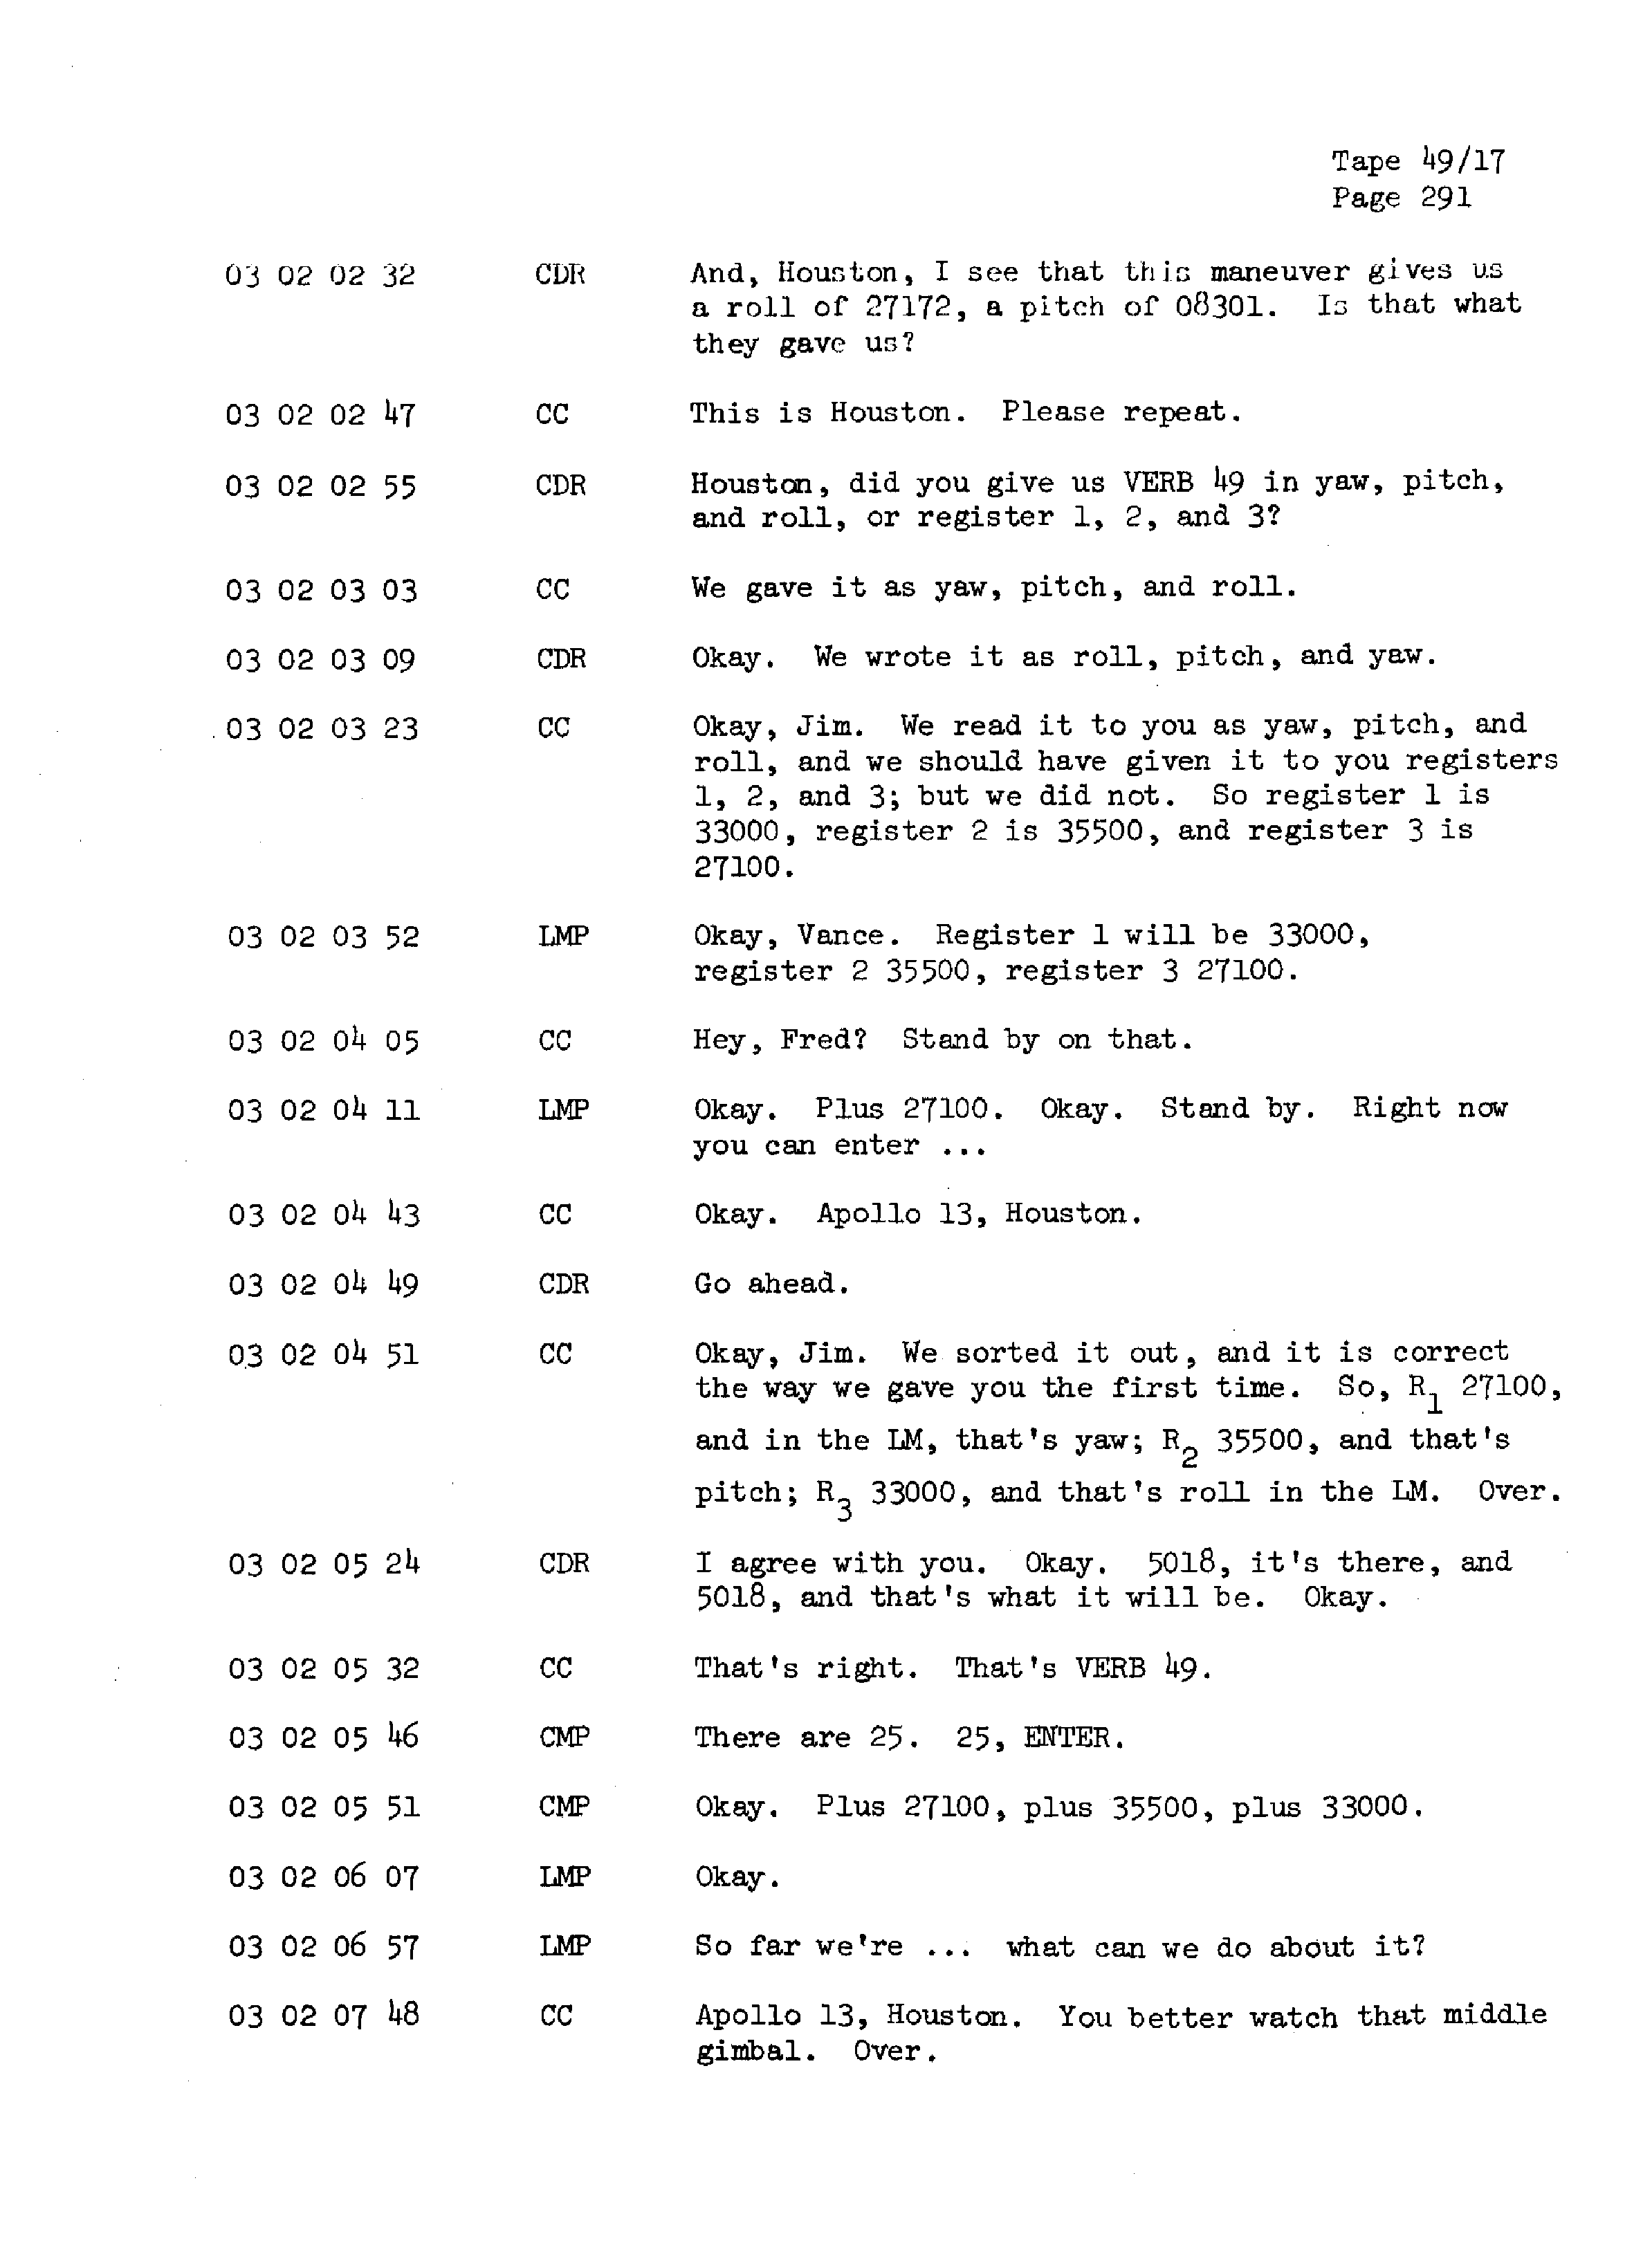 Page 298 of Apollo 13’s original transcript